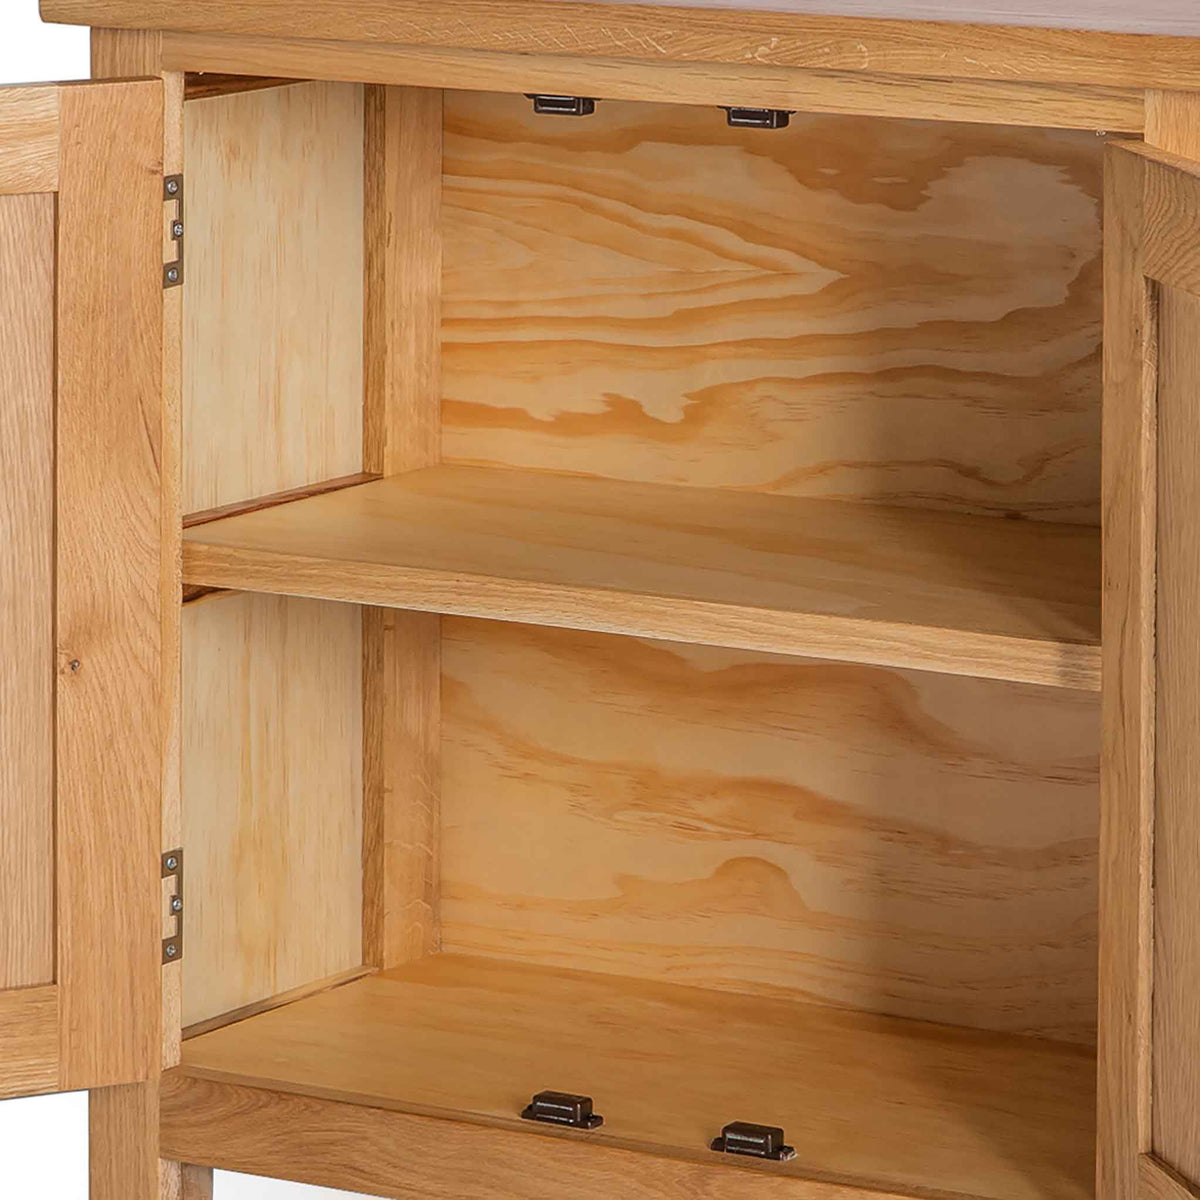 London Oak Small Cupboard - Close up of internal shelf inside cupboard